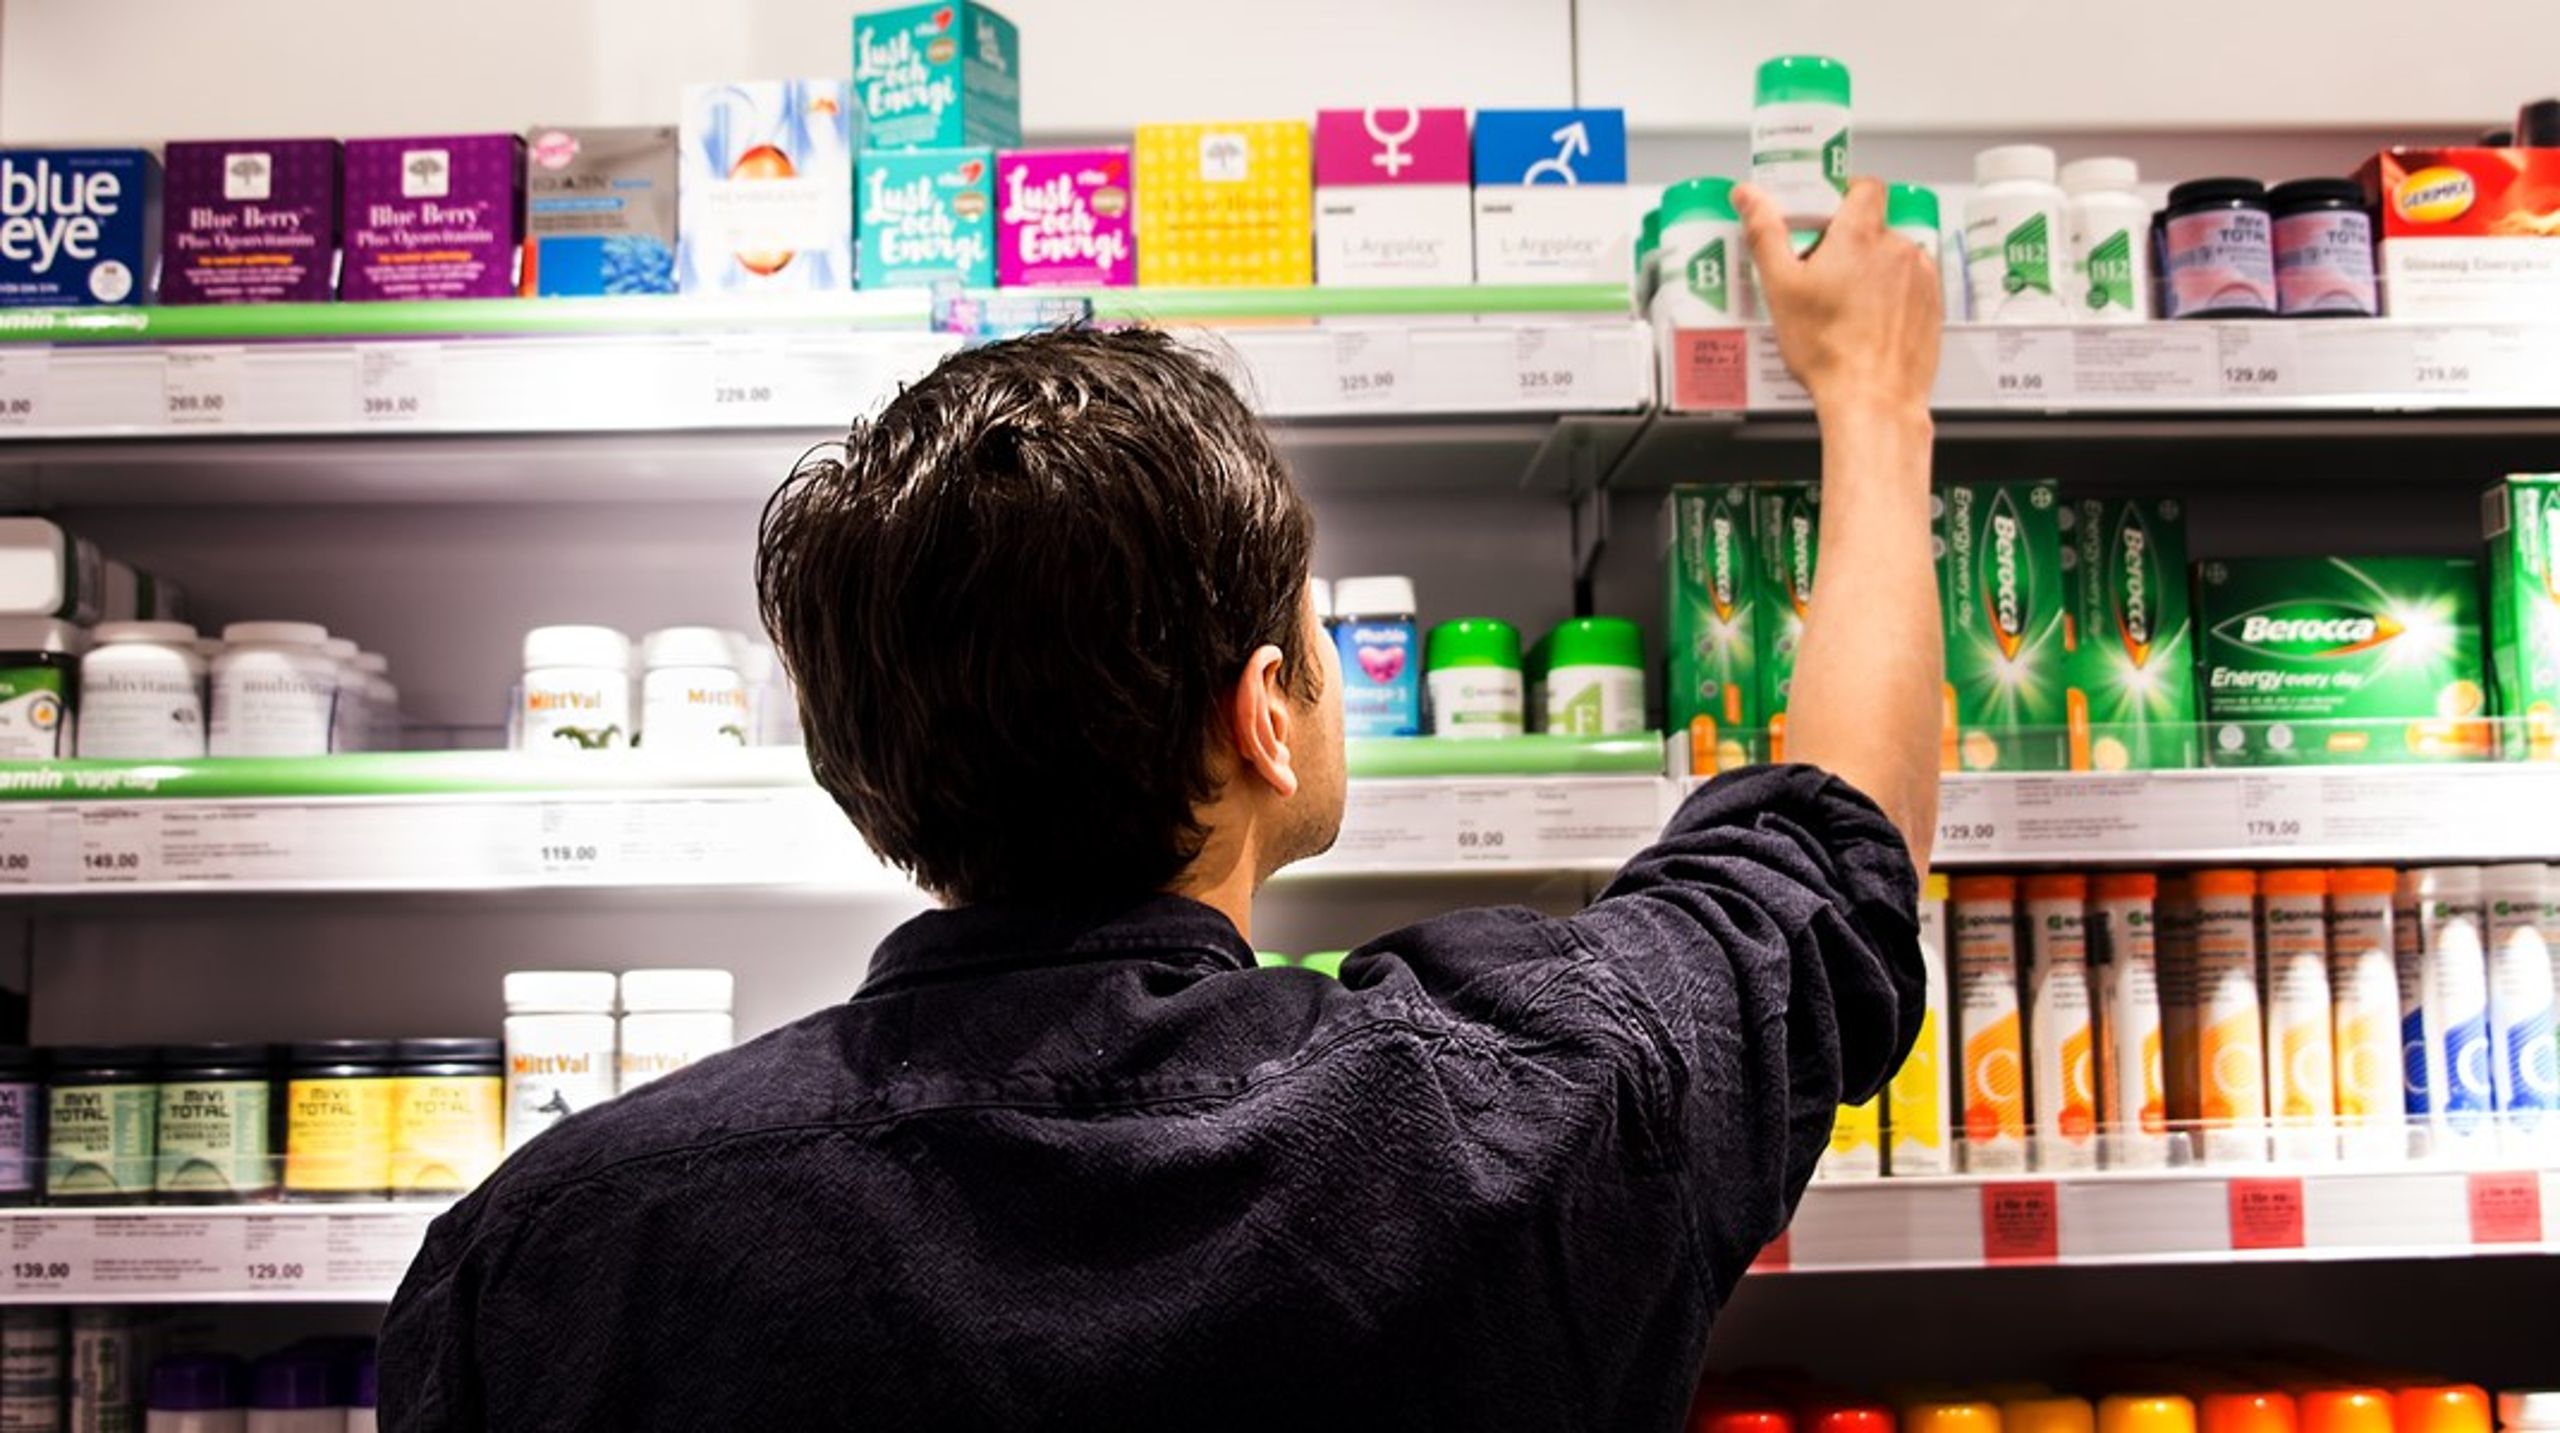 Antalet läkemedel som inte går att få tag på när kunden kommer till apotek har ökat lavinartat, skriver debattören.